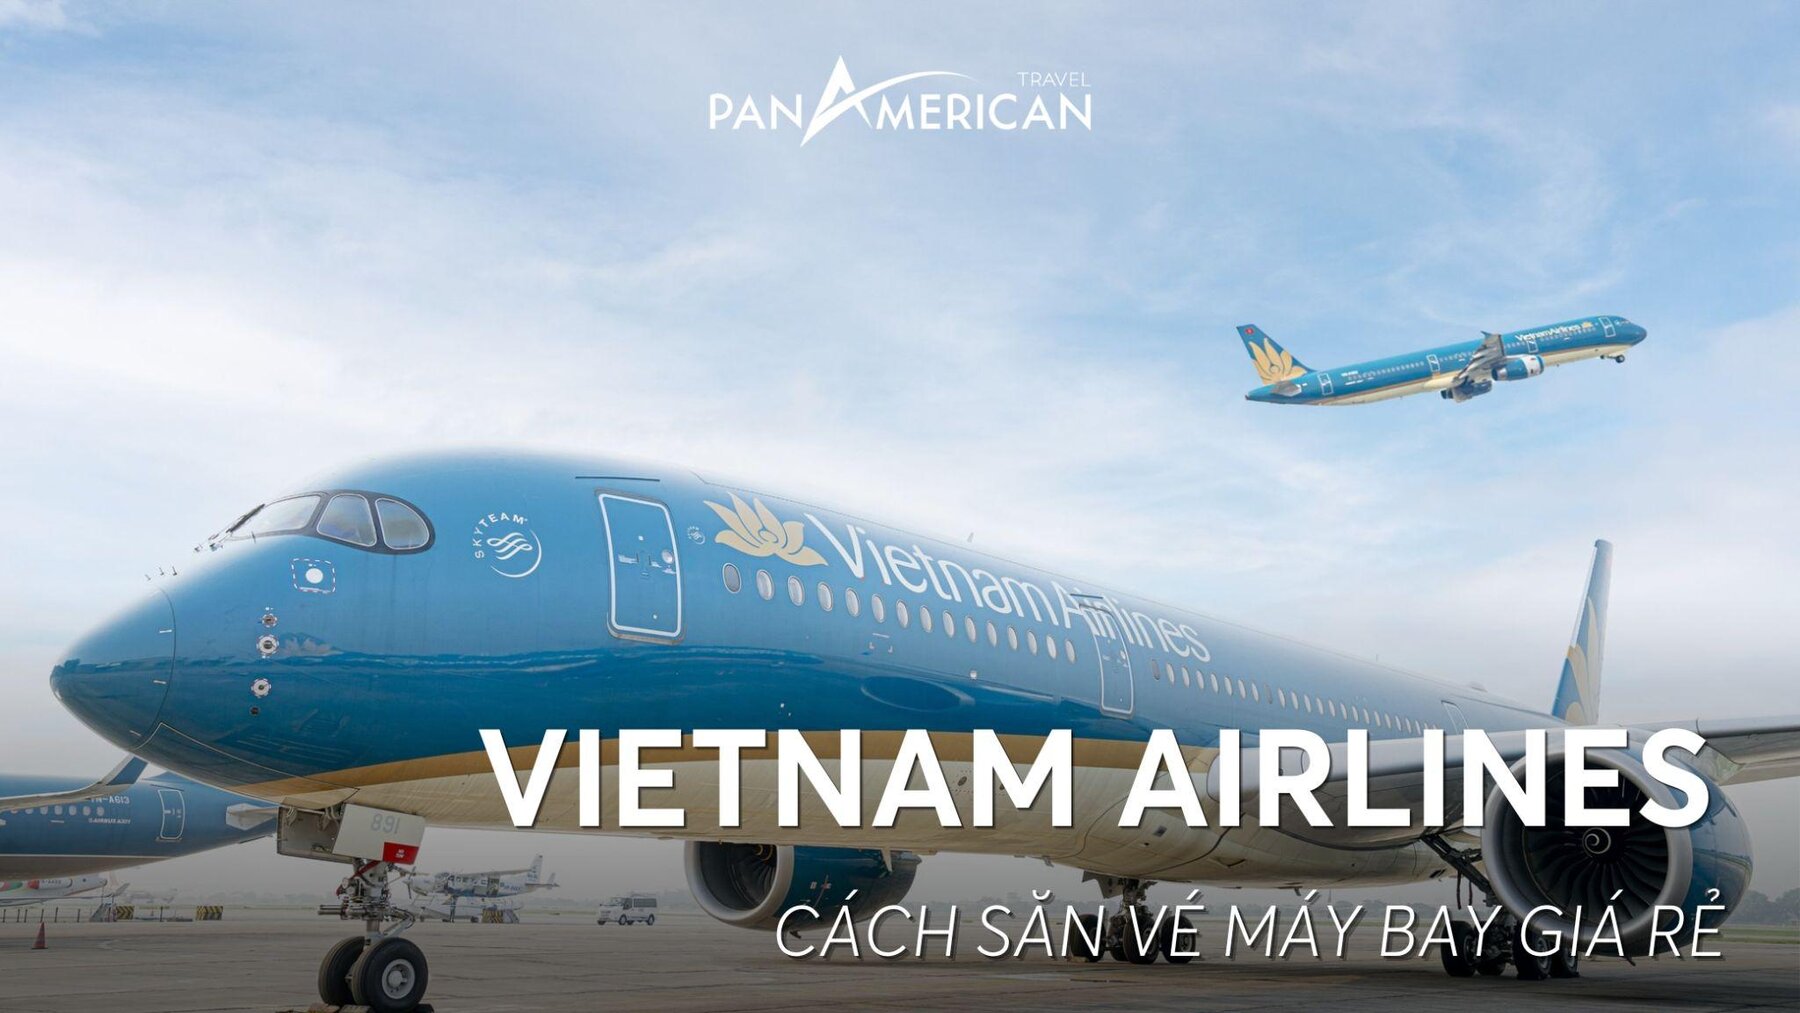 Giá vé máy bay Vietnam Airlines là bao nhiêu? Hướng dẫn cách đặt vé máy bay giá rẻ